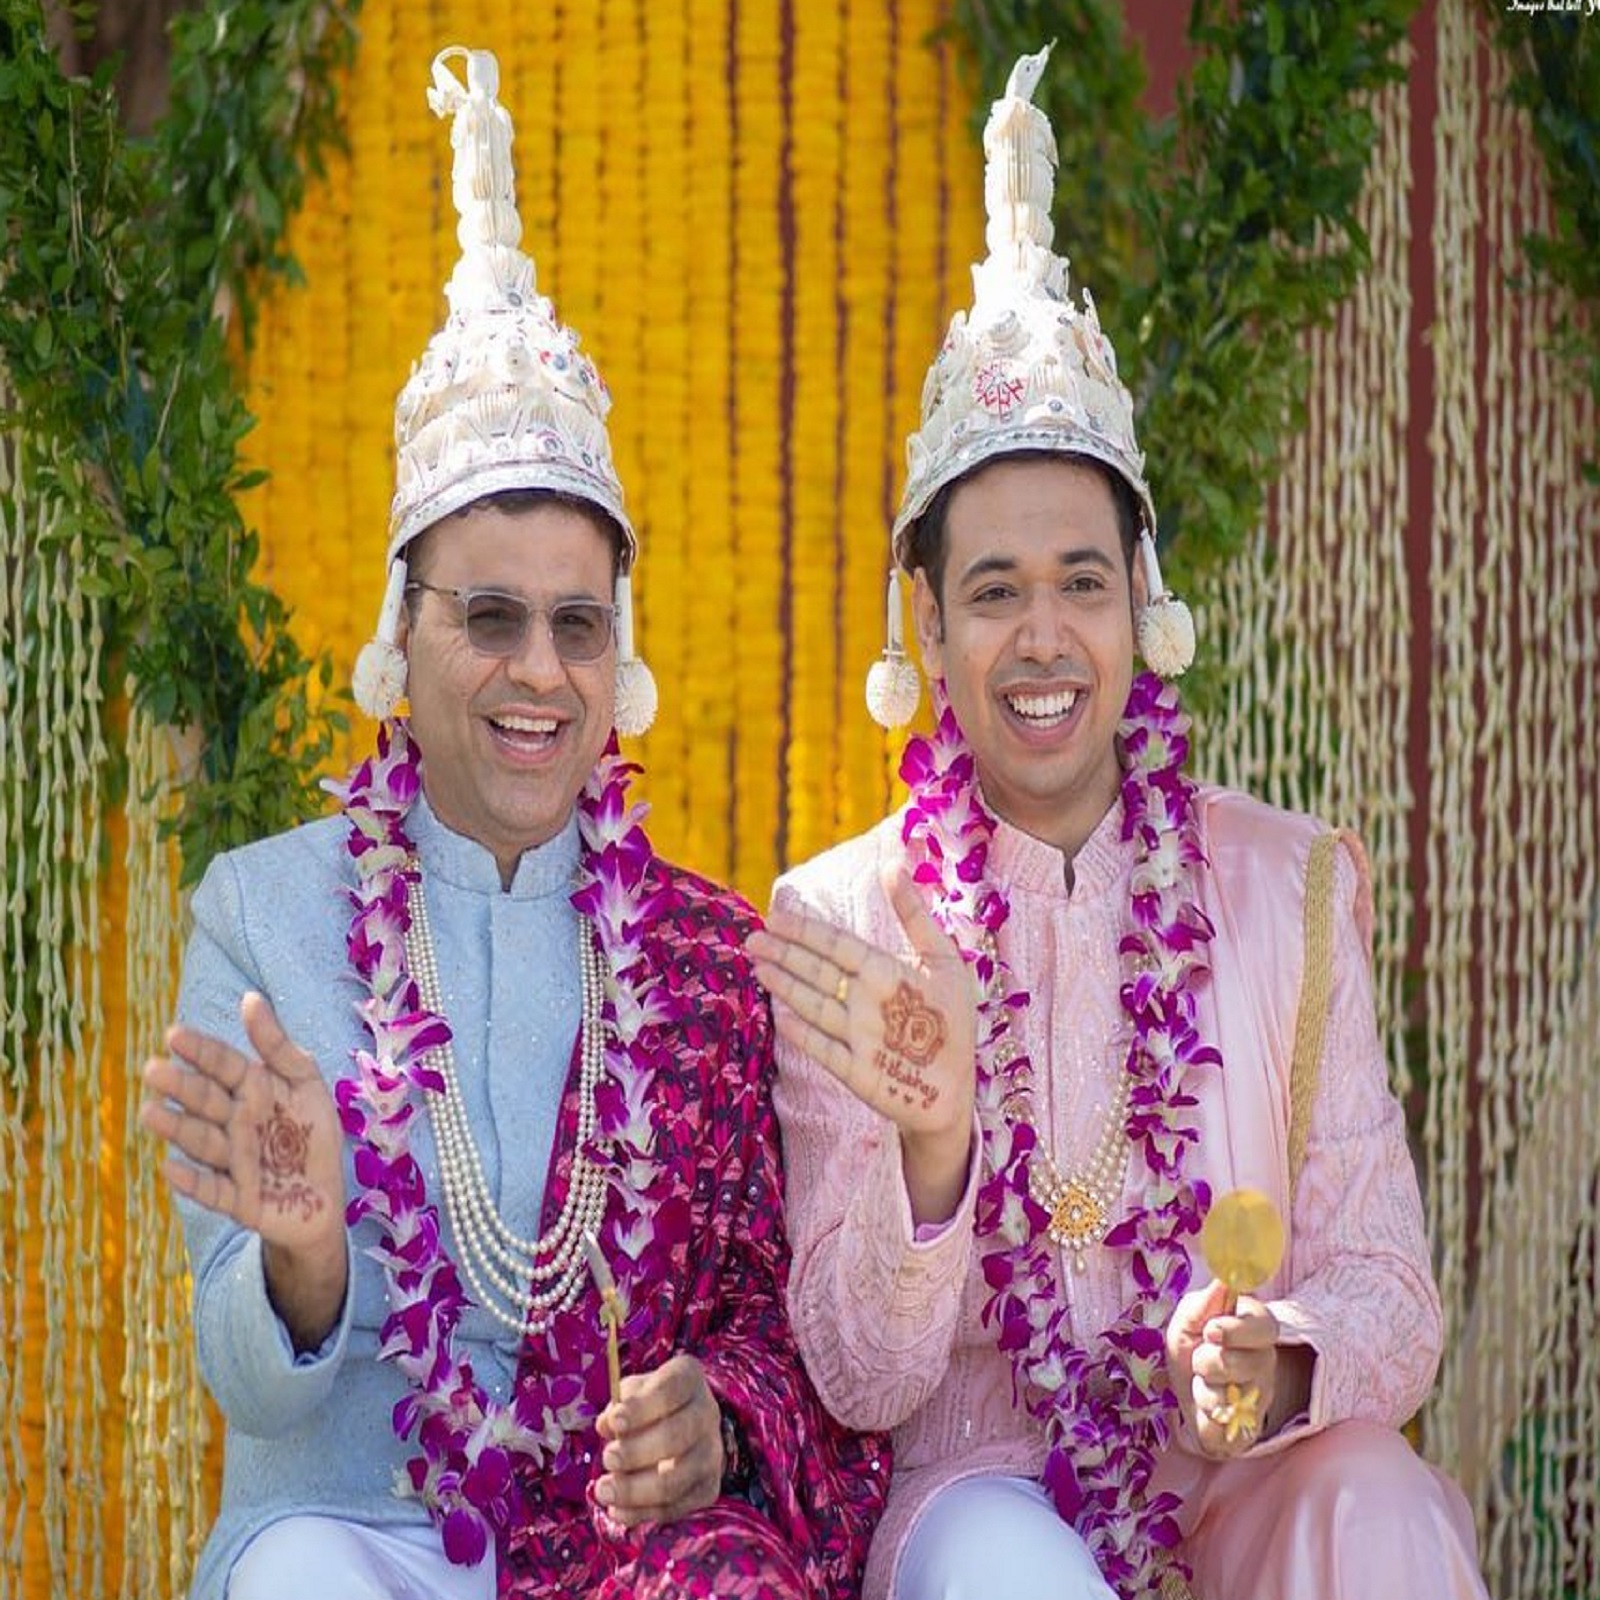  હૈદરાબાદ : તેલંગાણામાં (Telangana) સમલૈંગિક પુરુષોના પહેલા લગ્નમાં સુપ્રિયો ચક્રવર્તી અને અભય ડાંગ (Supriyo Chakraborty and Abhay Dang ‘first’ wedding of gay men in Telangana) પોતાના લગભગ એક દાયકા જૂના સંબંધને આગળ વધારતા લગ્નના બંધનમાં બંધાઈ ગયા. સુપ્રિયોએ કહ્યું કે તેમના લગ્નએ બધાને મજબૂત સંદેશ આપ્યો છે કે ખુશ રહેવા માટે કોઈની પરવાનગીની જરૂર નથી. આ સમલૈંગિક પુરુષોને તેલંગાણાનું પહેલું ગે કપલ માનવામાં આવે છે.